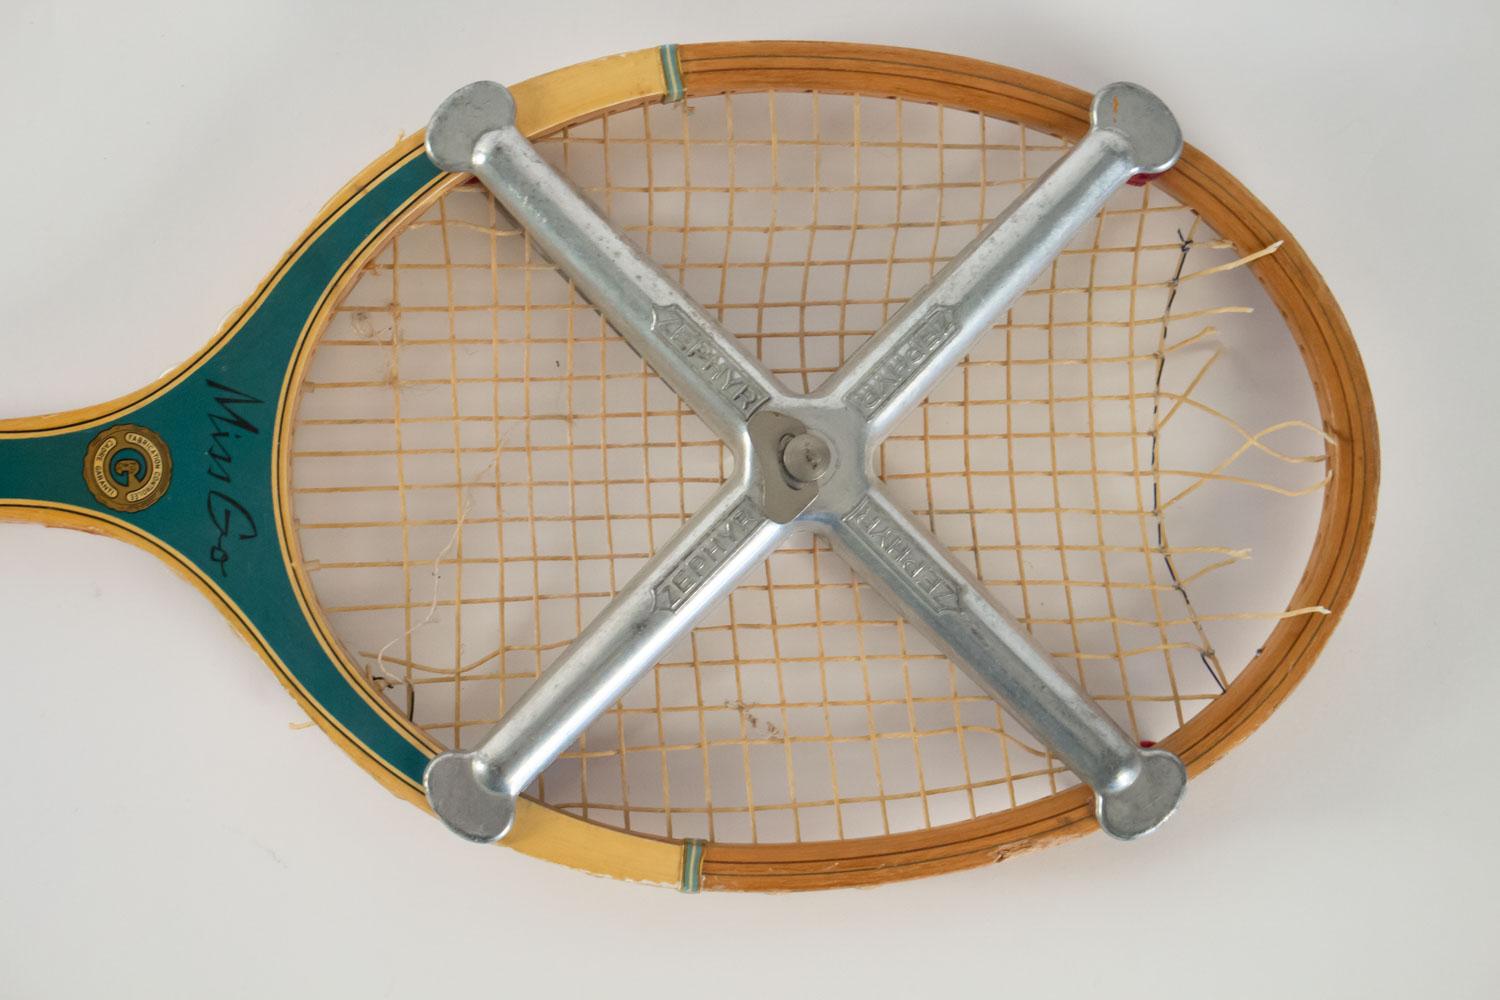 Tennisschläger, Miss Go, Profi, Mitte des 20. Jahrhunderts. 
Maße: H 70cm, B 23cm, B 3cm.